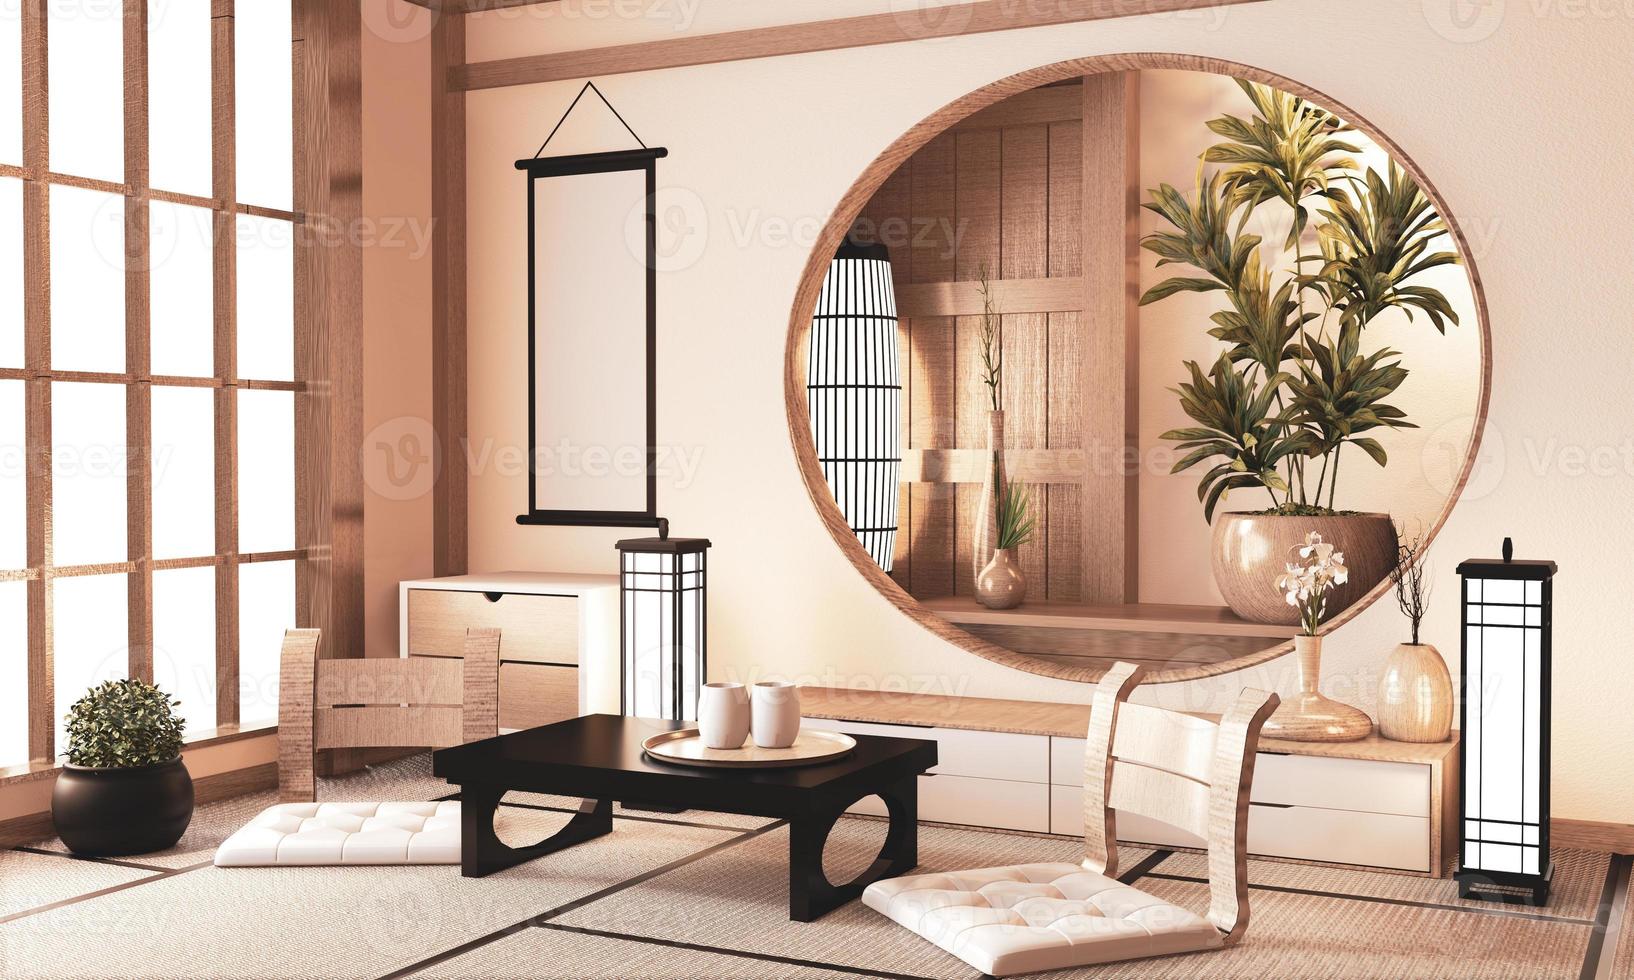 Ryokan very zen room with wall wooden shelf design and tatami floor, room earth tone.3D rendering photo